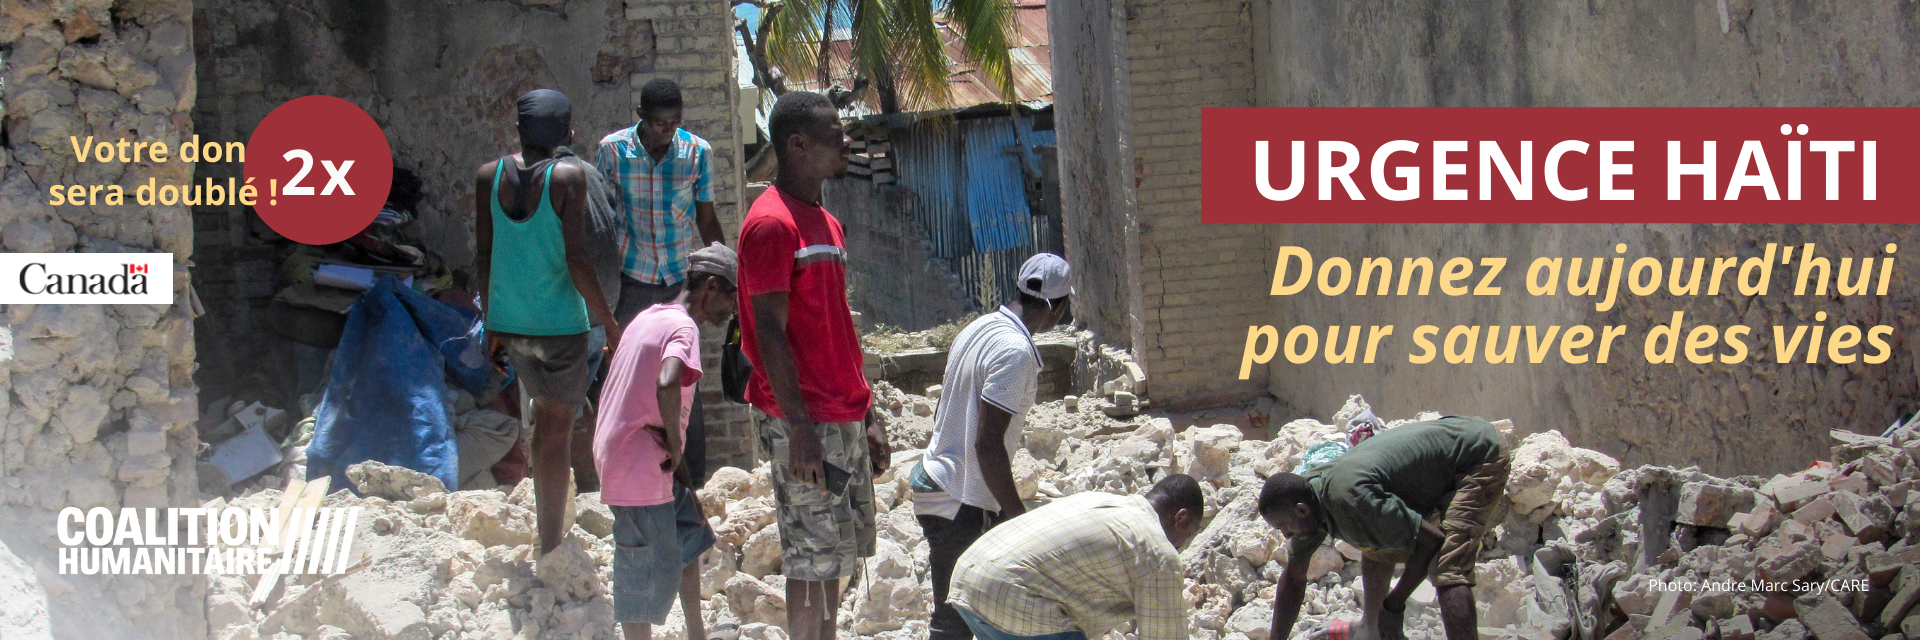 Bannière Haïti Coalition humanitaire